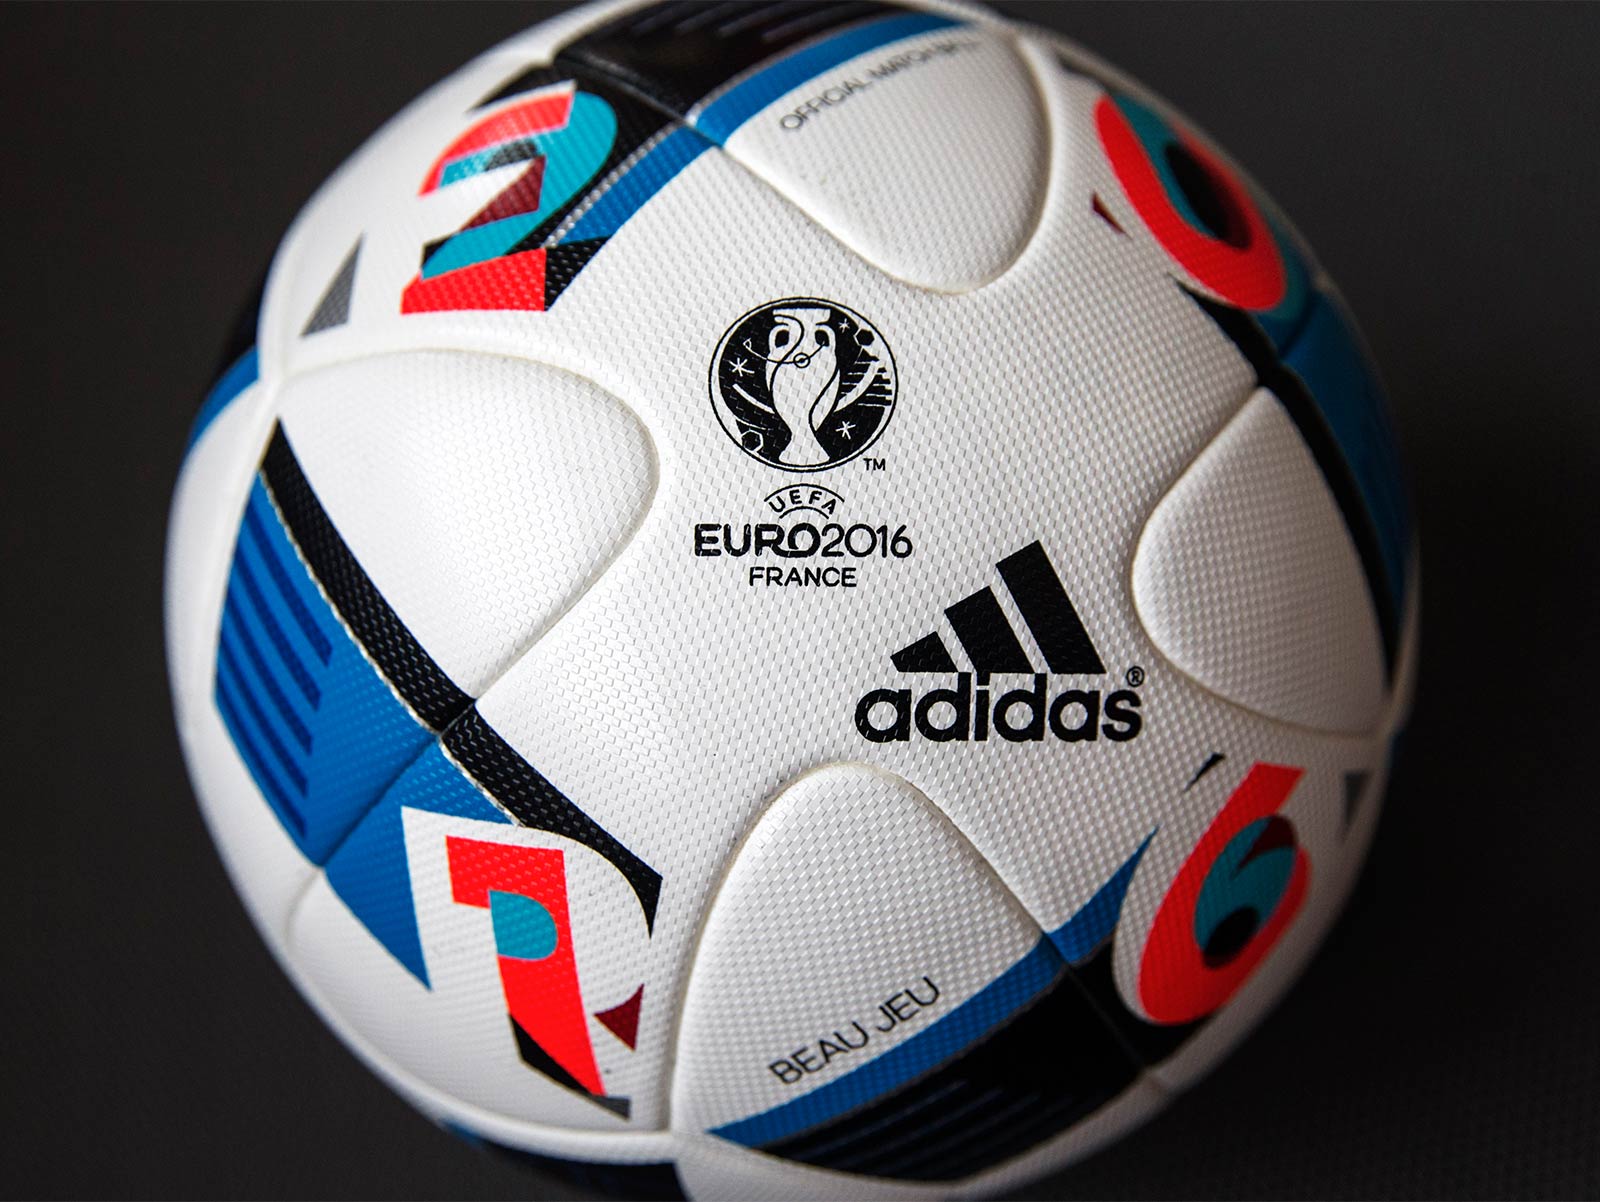 Adidas Beau Jeu EM 2016 Ball veröffentlicht - Nur Fussball